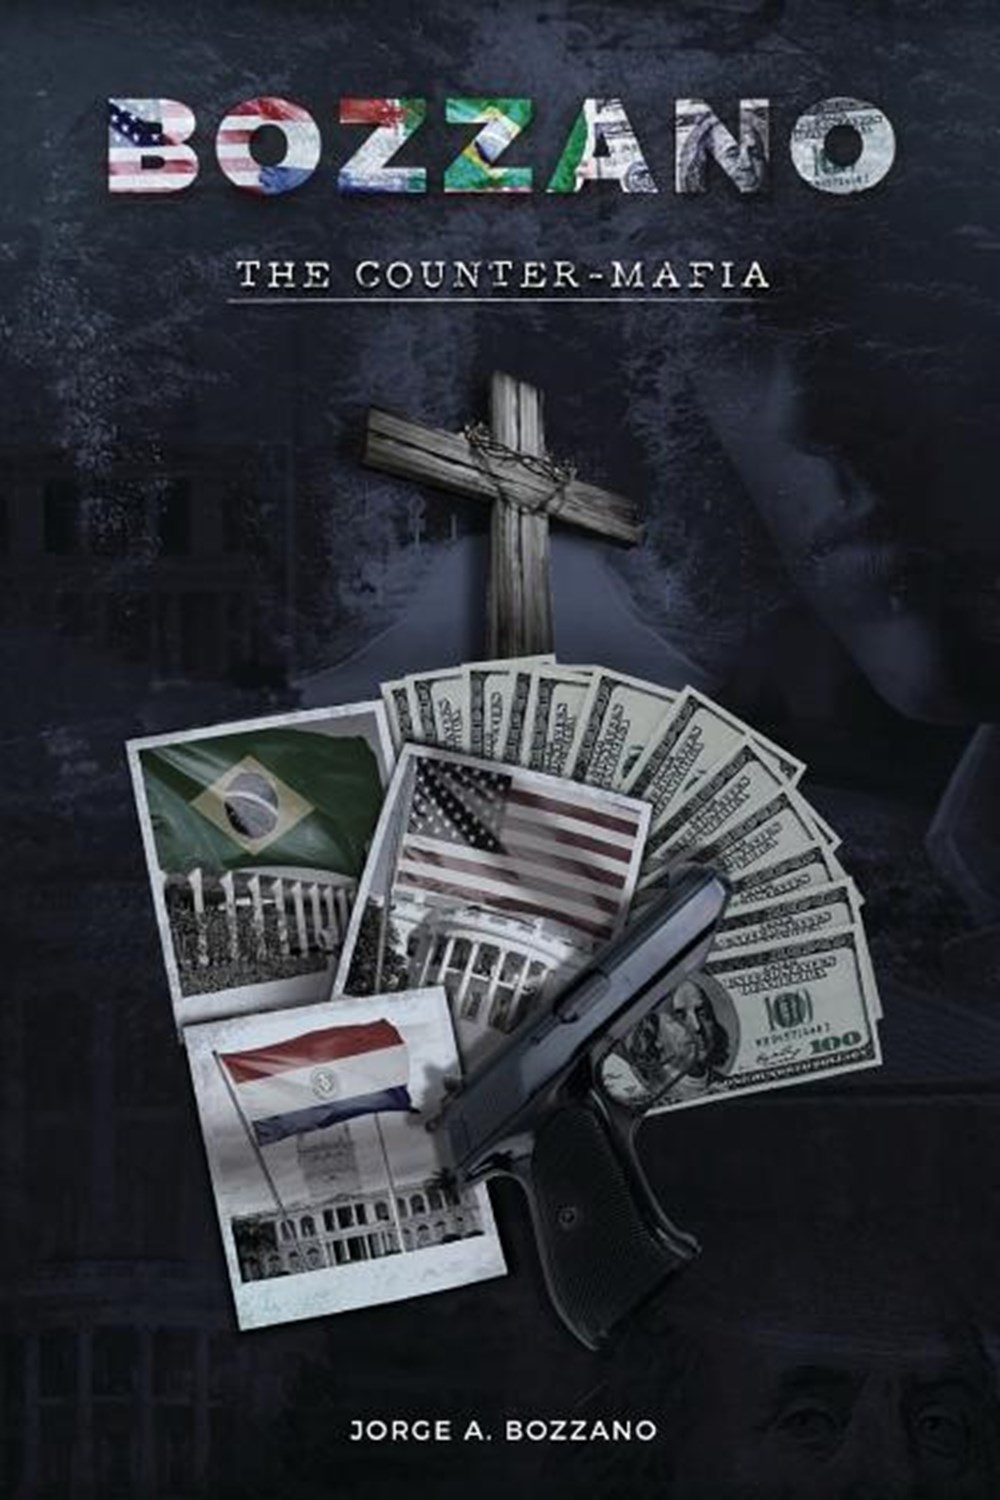 BOZZANO - The Counter-Mafia